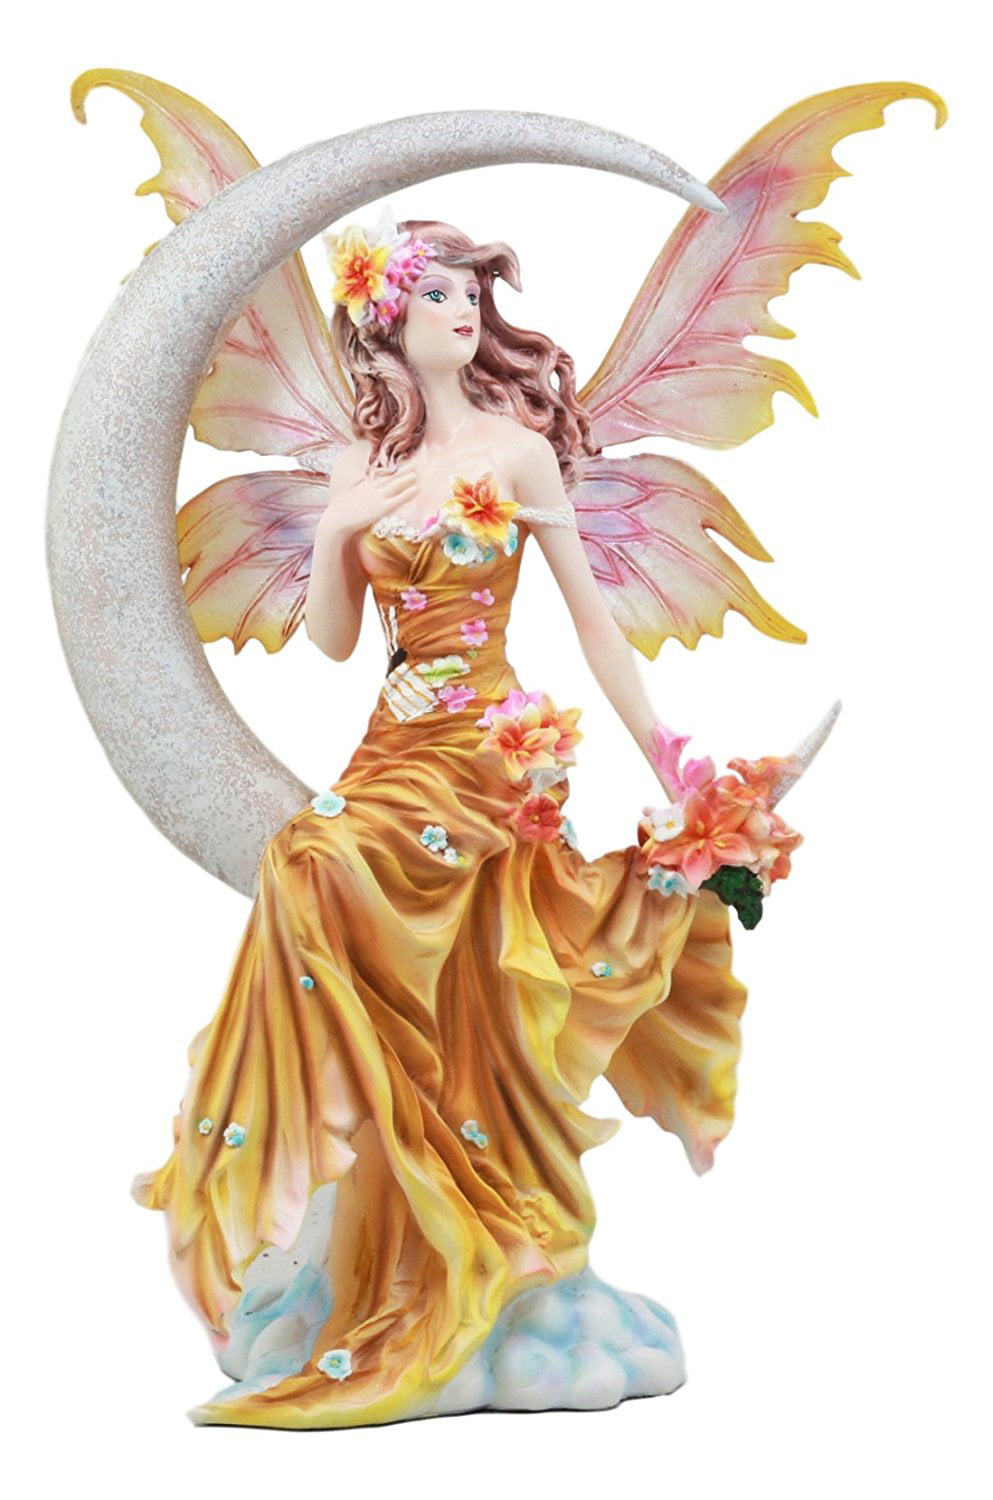 Nene Thomas Winter Wings Fairy & White Horse Licensed Art Figurine 10" Tall 